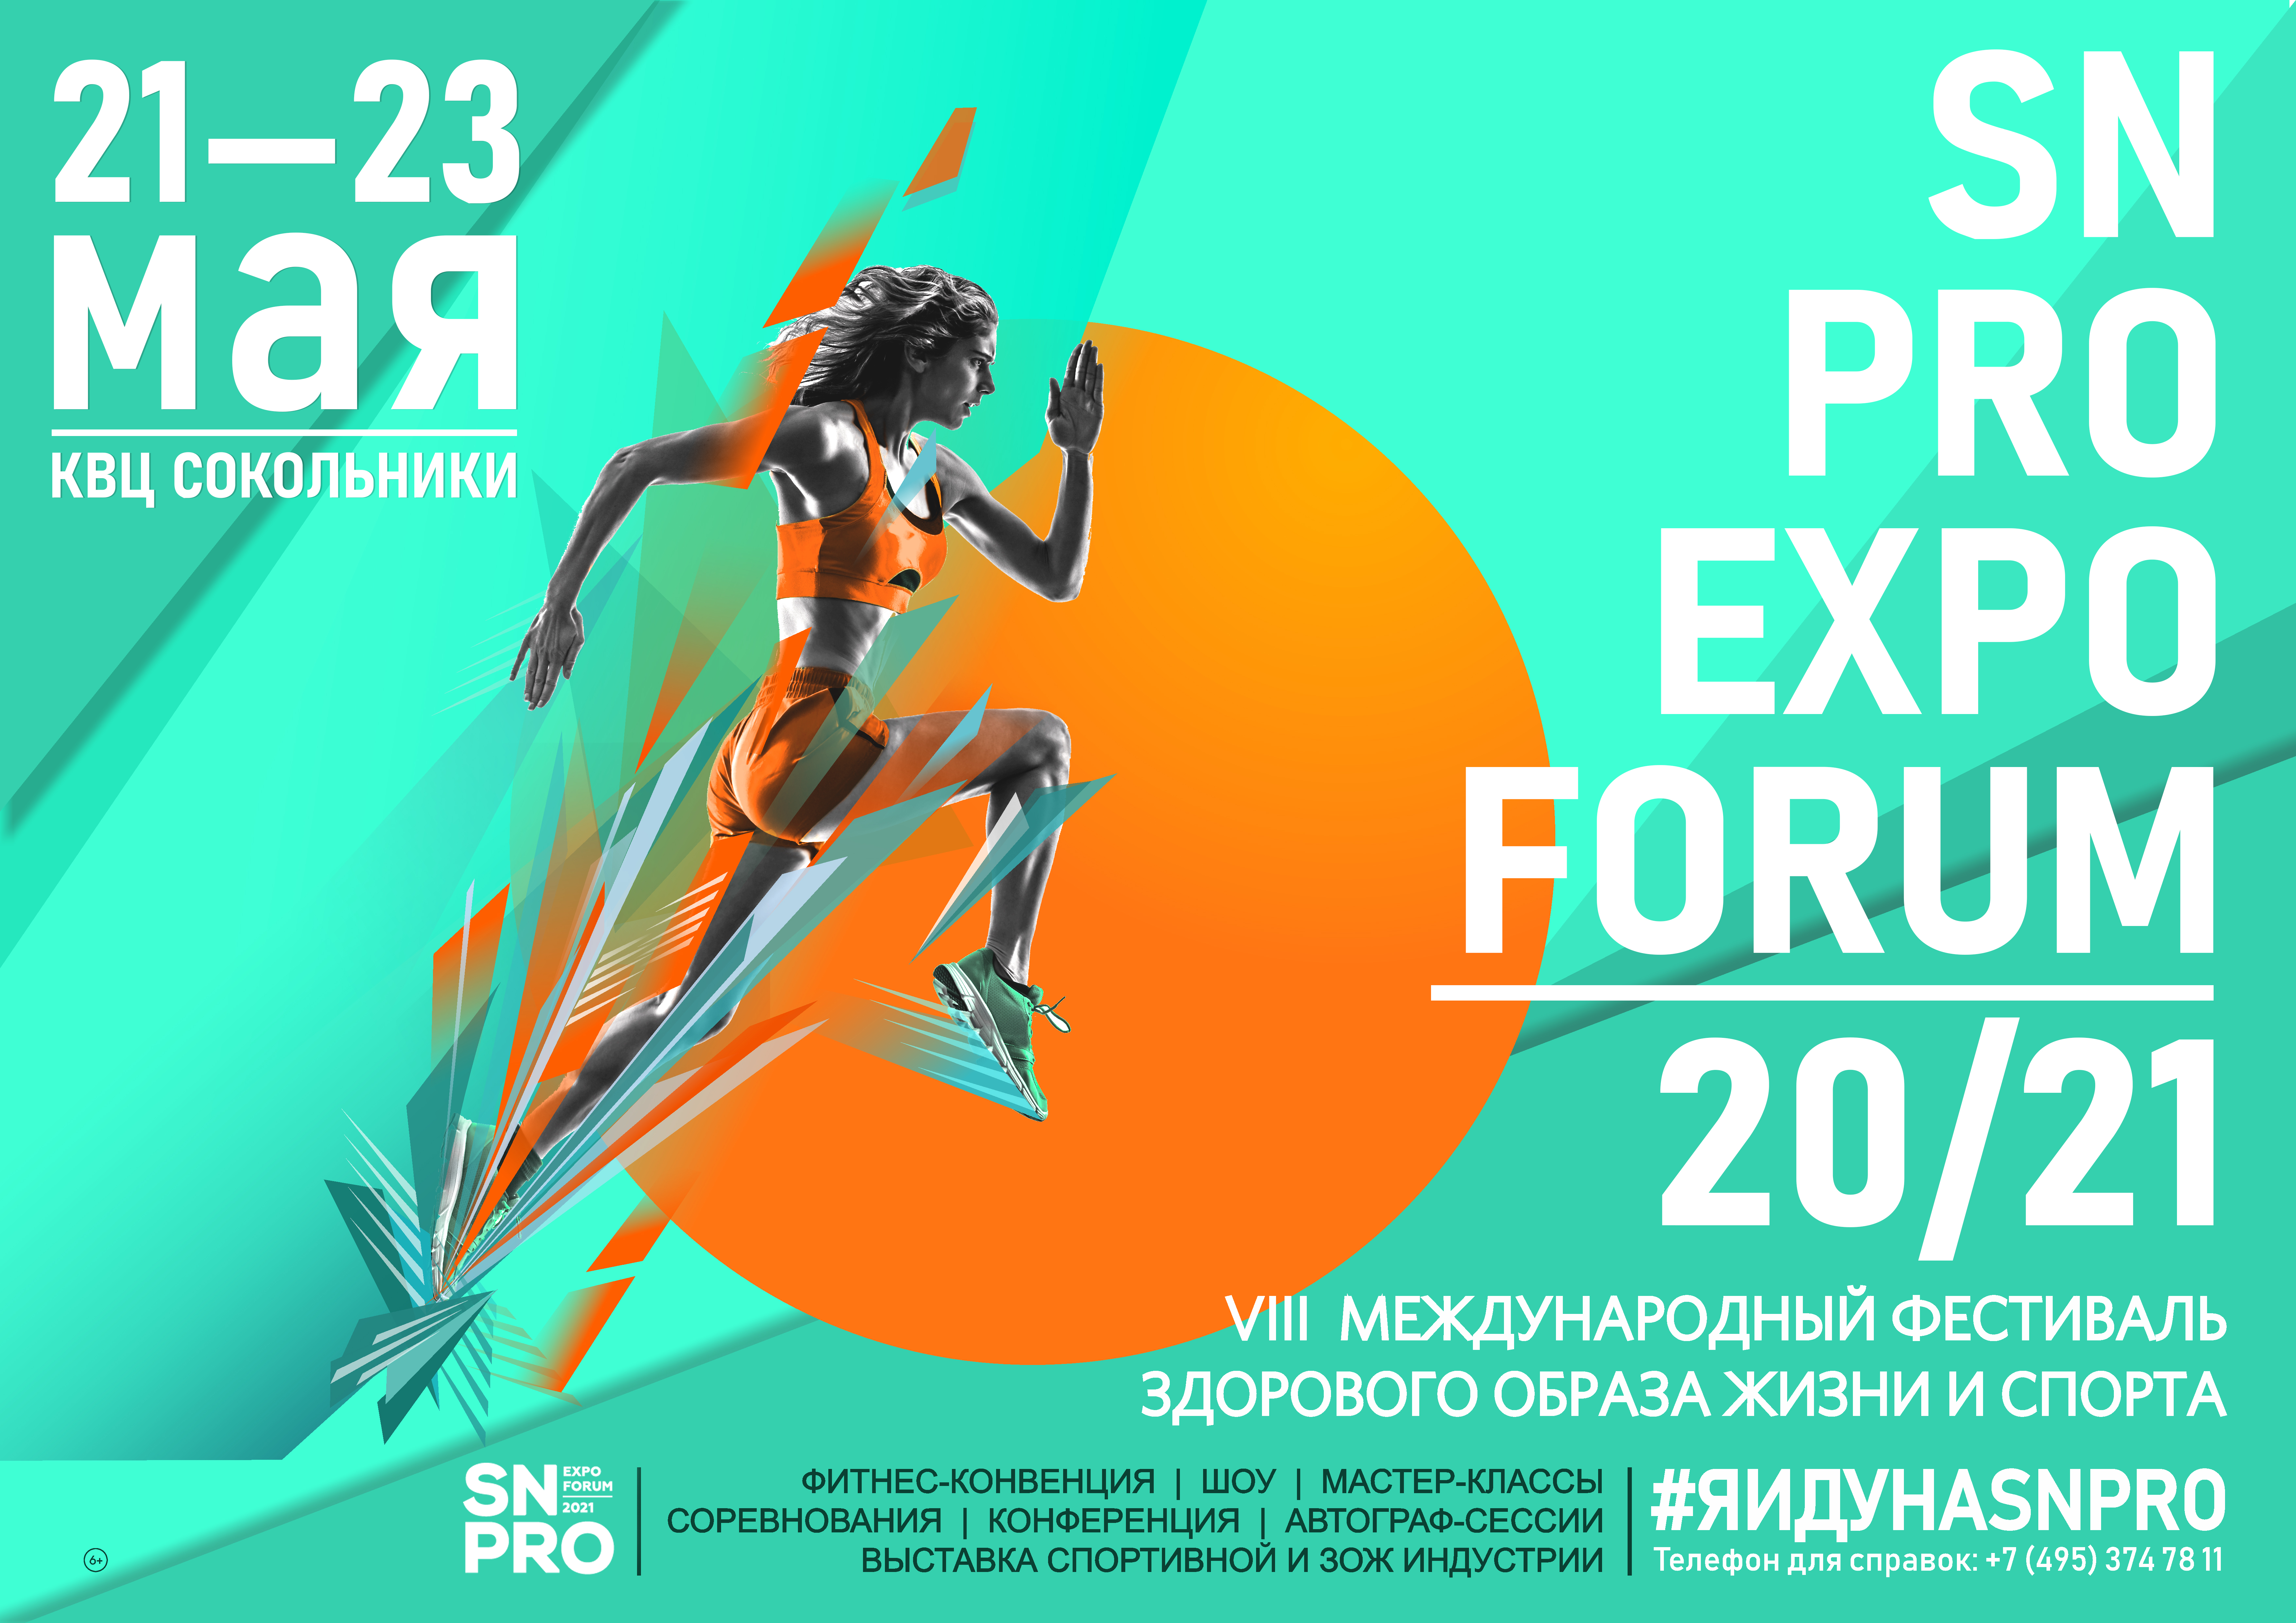 Фестиваль SN PRO EXPO FORUM